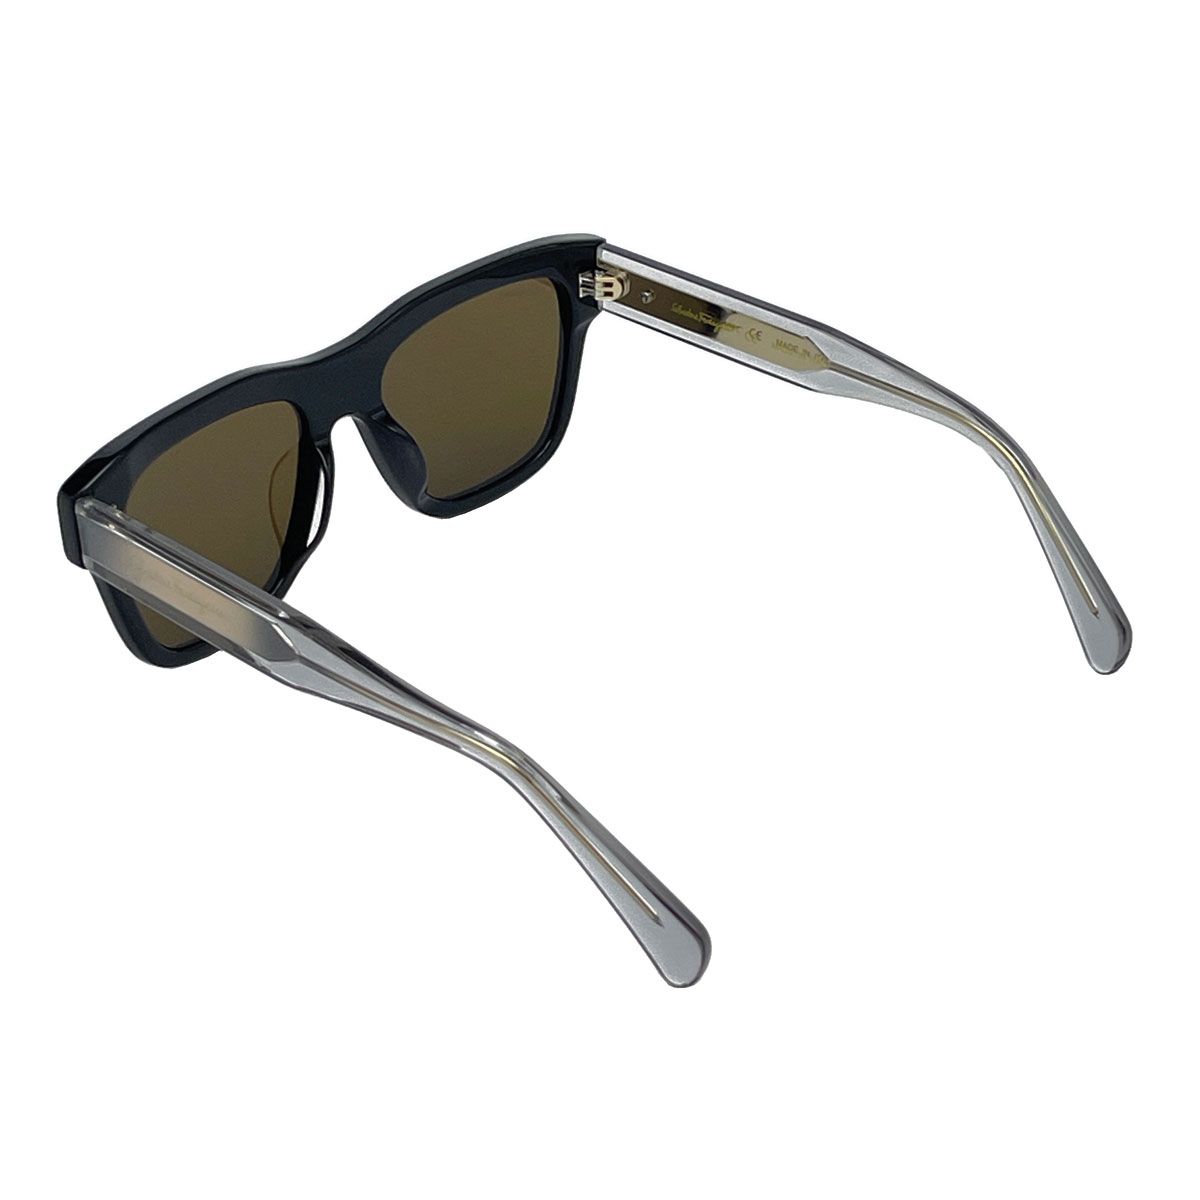 عینک آفتابی مردانه سالواتوره فراگامو مدل 51G087 - 746 -  - 5